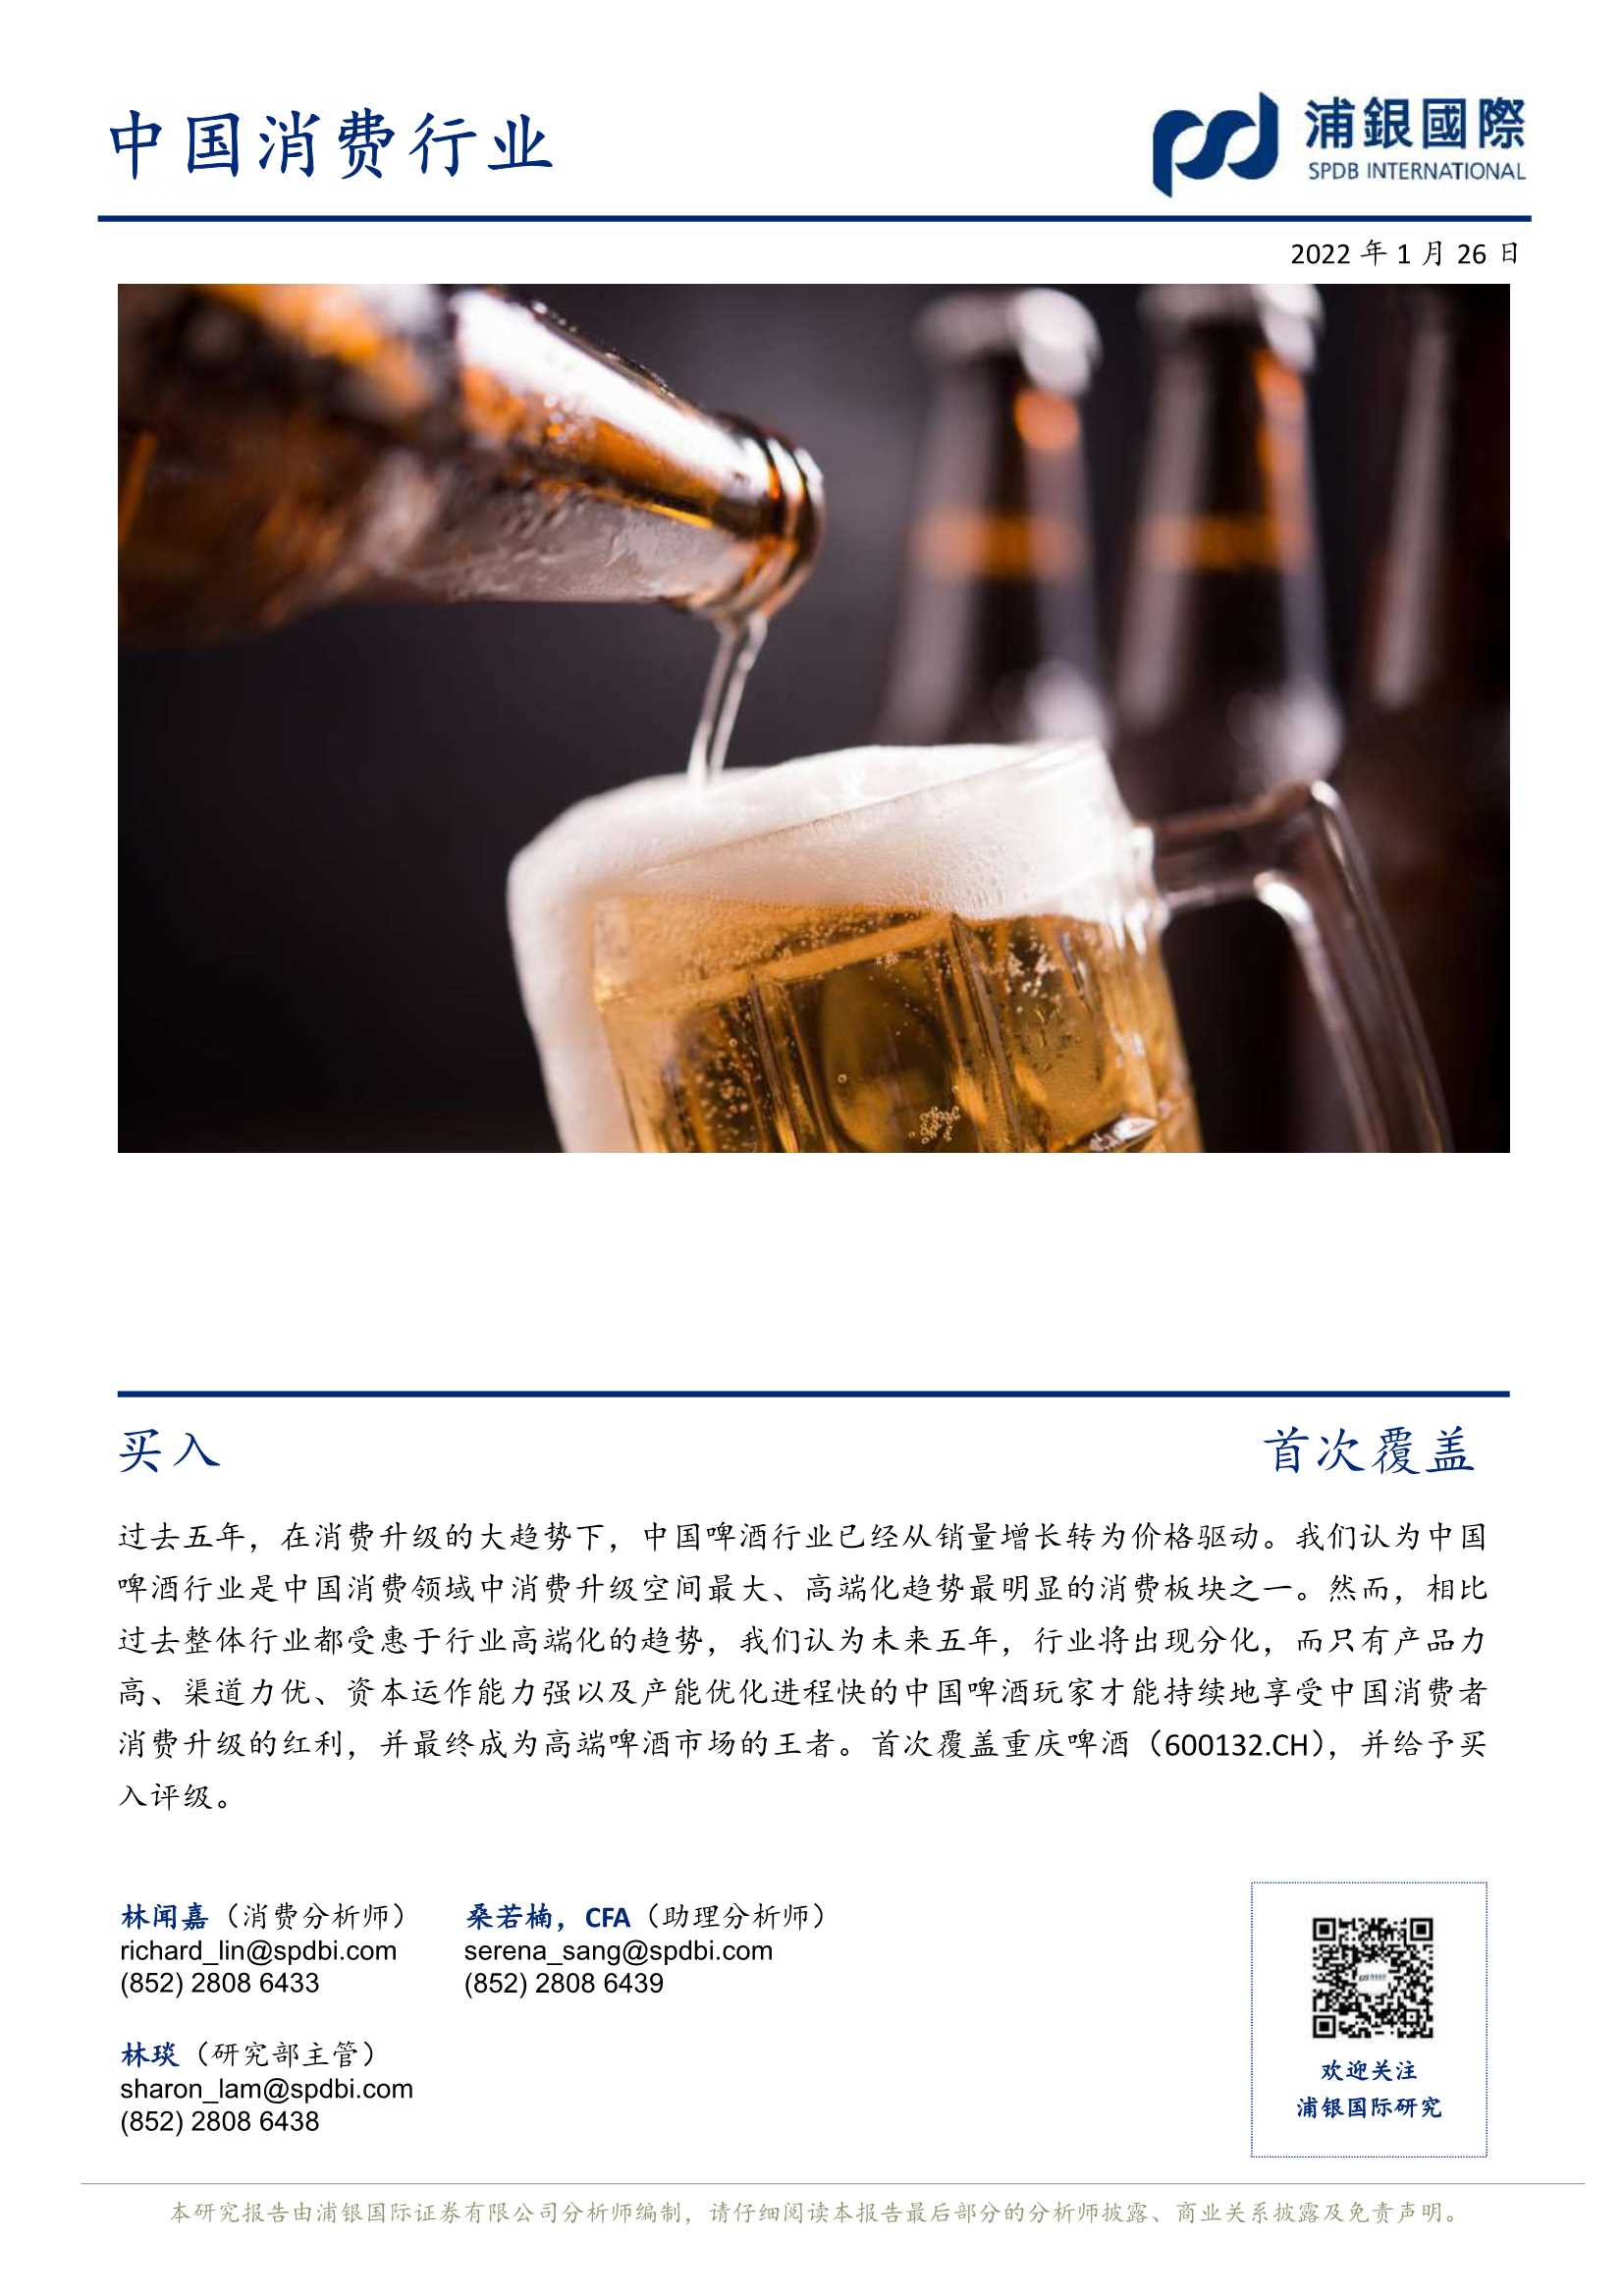 浦银国际-重庆啤酒-600132-千锤百炼修自身，一朝麻雀变凤凰-20220126-35页